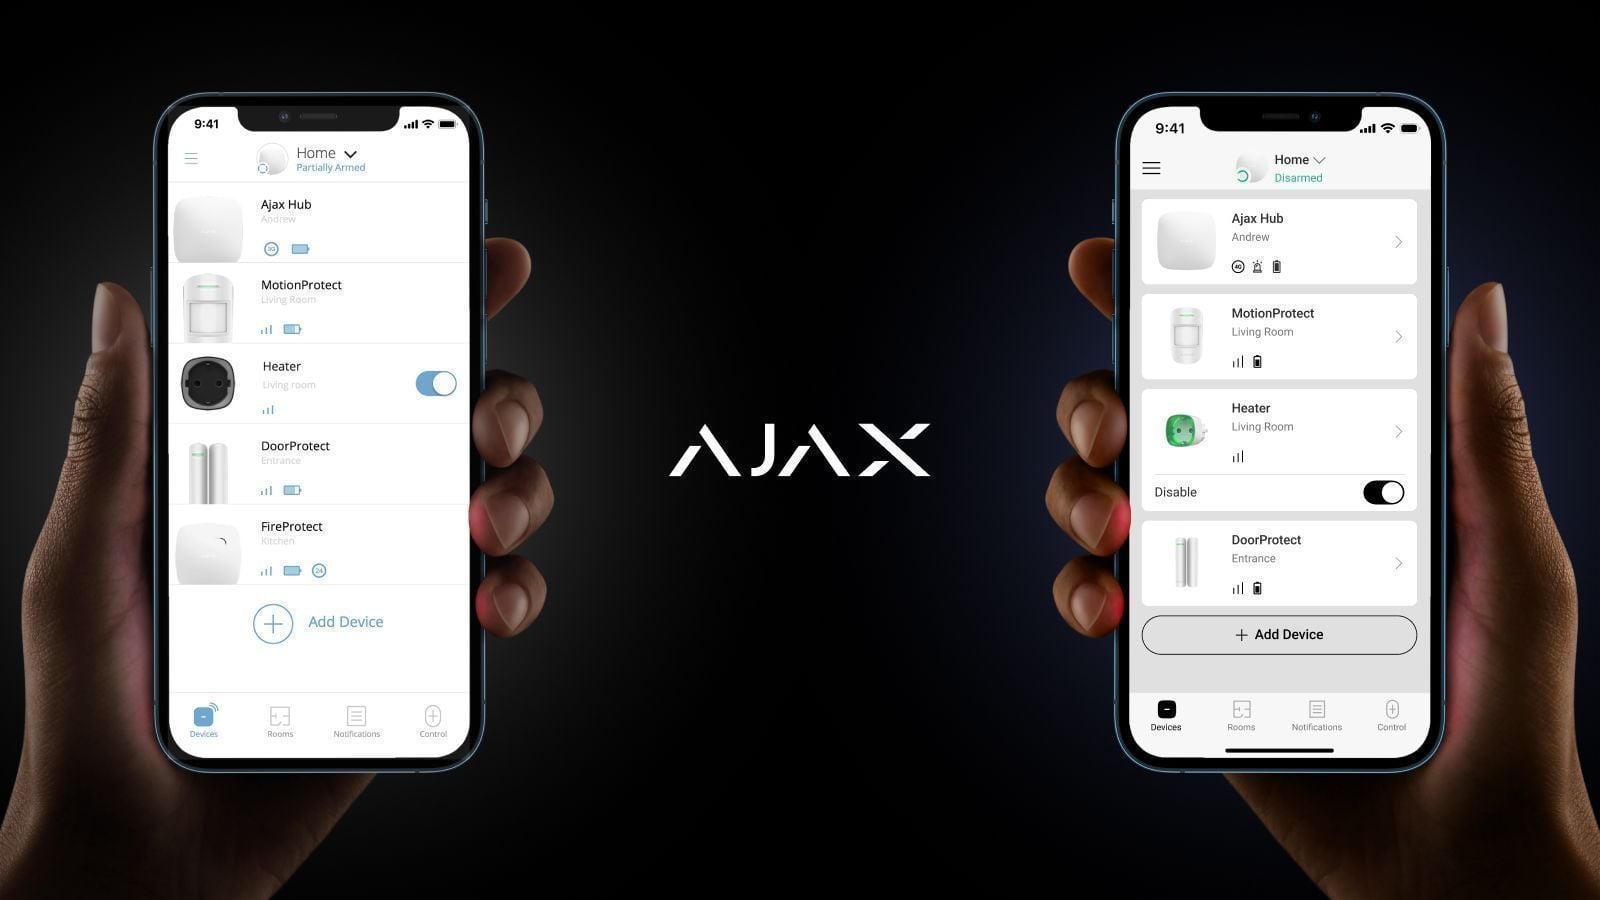 Design atualizado das aplicações Ajax — tudo pelo conforto